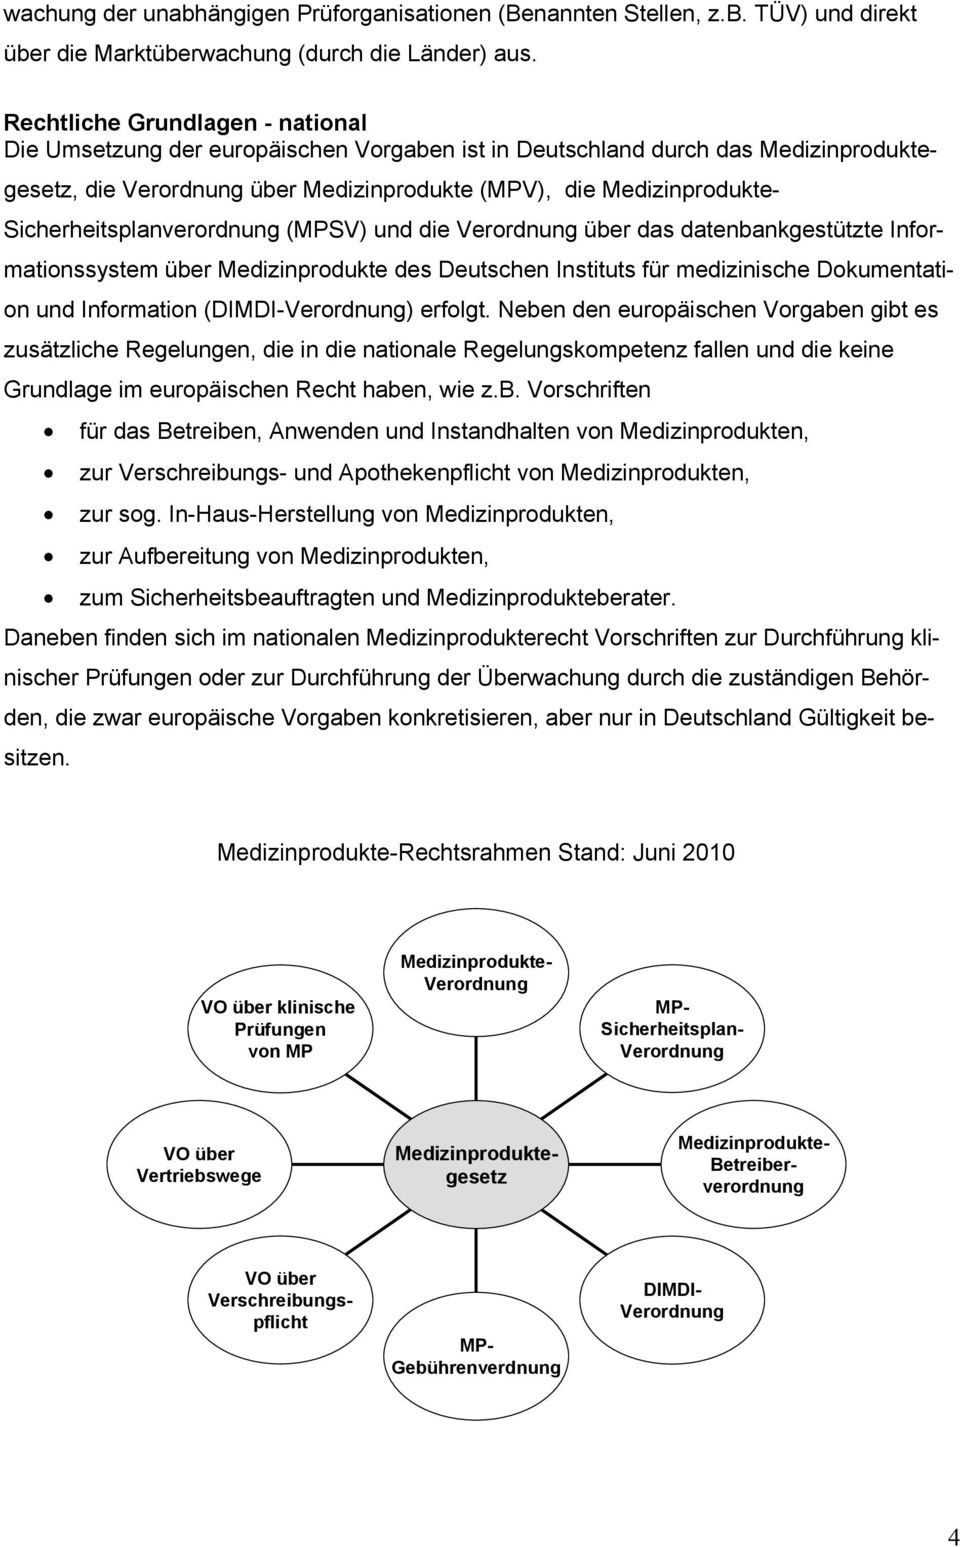 Sicherheitsplanverordnung (MPSV) und die Verordnung über das datenbankgestützte Informationssystem über Medizinprodukte des Deutschen Instituts für medizinische Dokumentation und Information